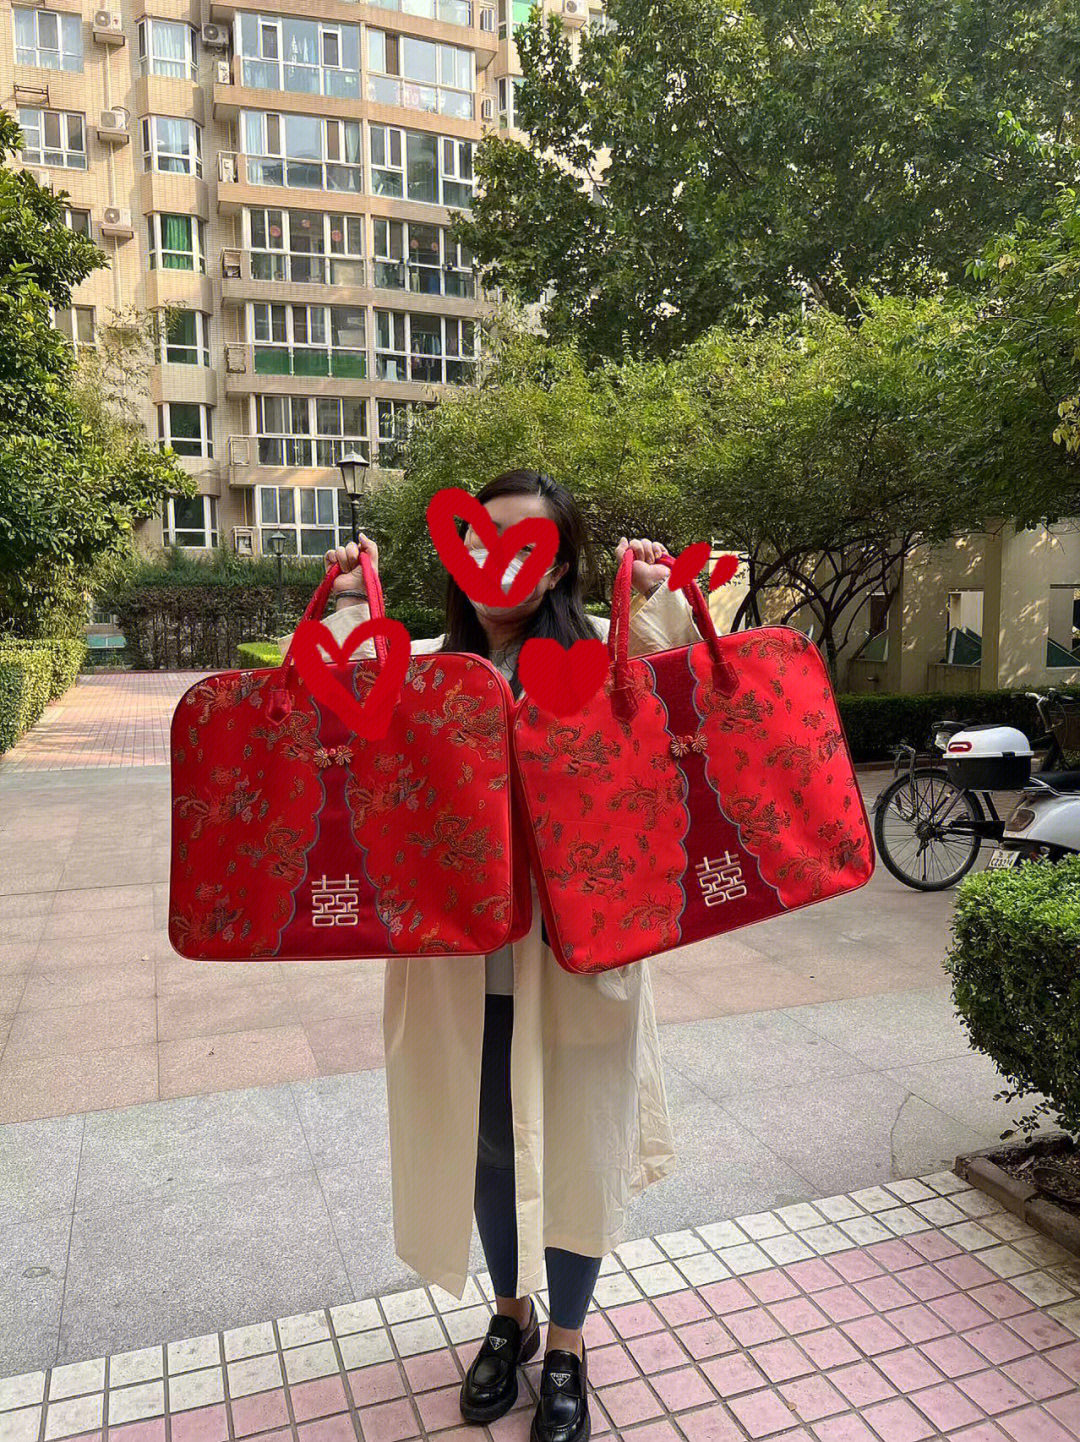 北京健康宝红色图片